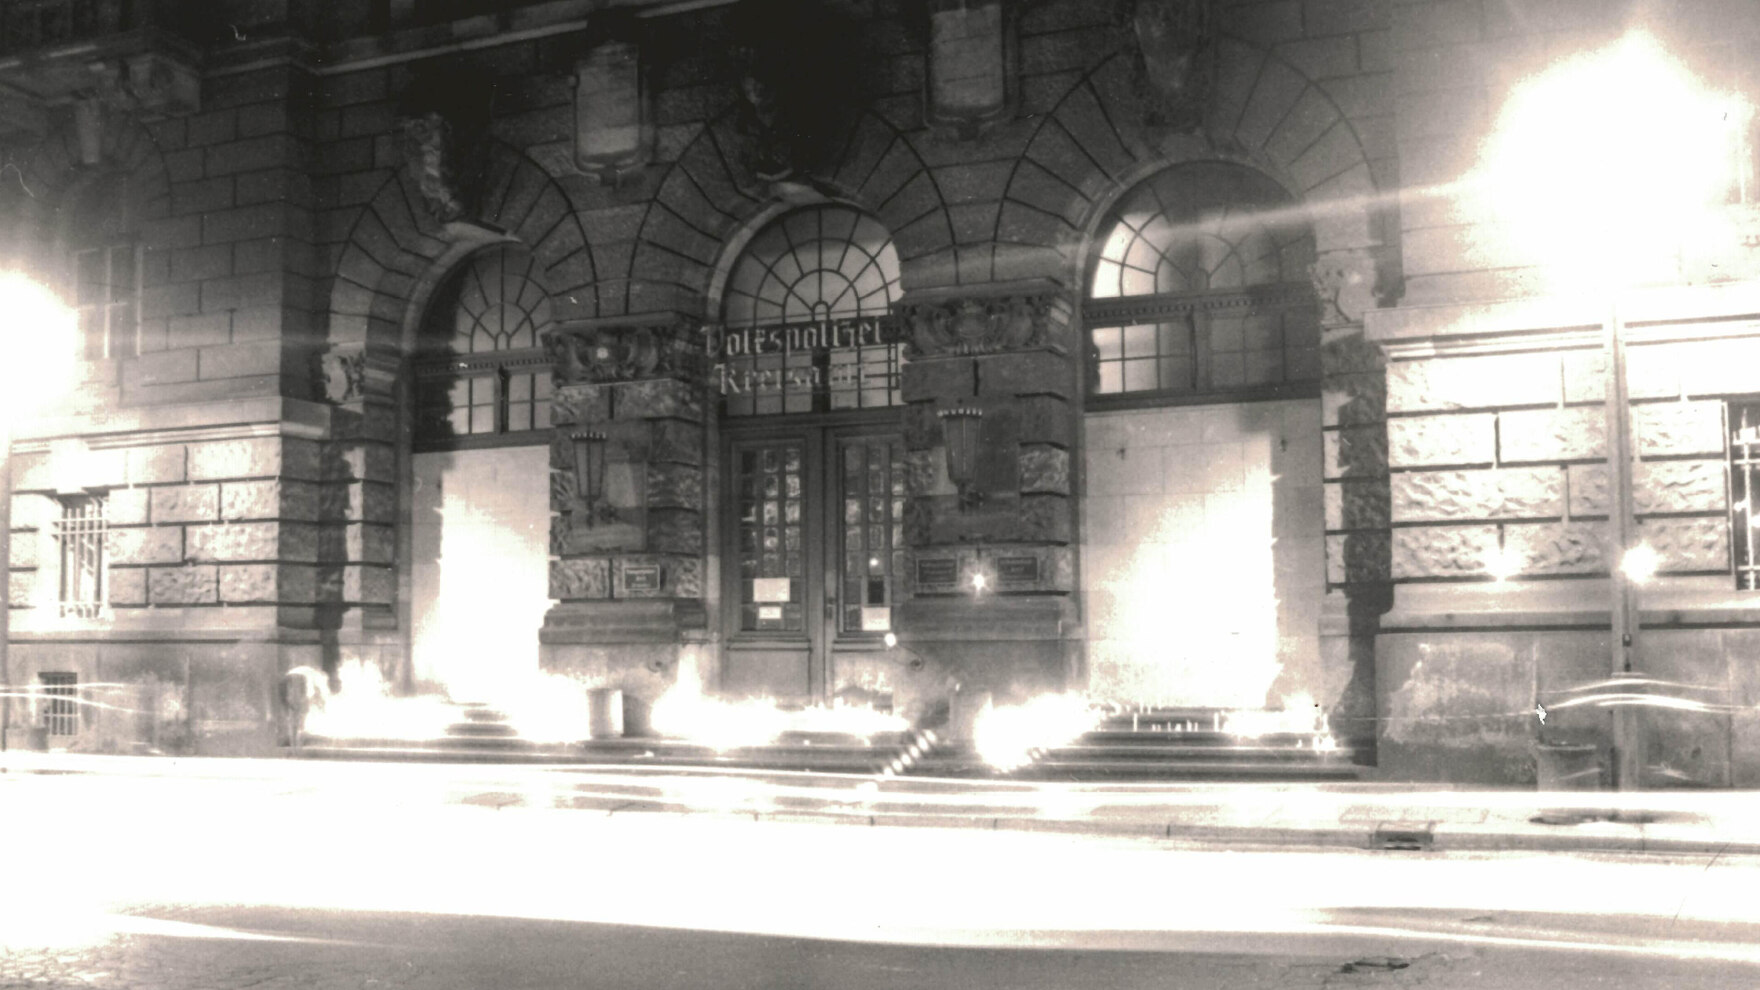 Das Foto in schwarz-weiß zeigt viele angezündete Kerzen auf den Stufen zu einem Gebäude, welches den Schriftzug »Volkspolizei Kreisamt« trägt. Das Bild ist an den hellen Stellen überstrahlt, die Kerzen an mehreren Stellen nicht einzeln zu erkennen.